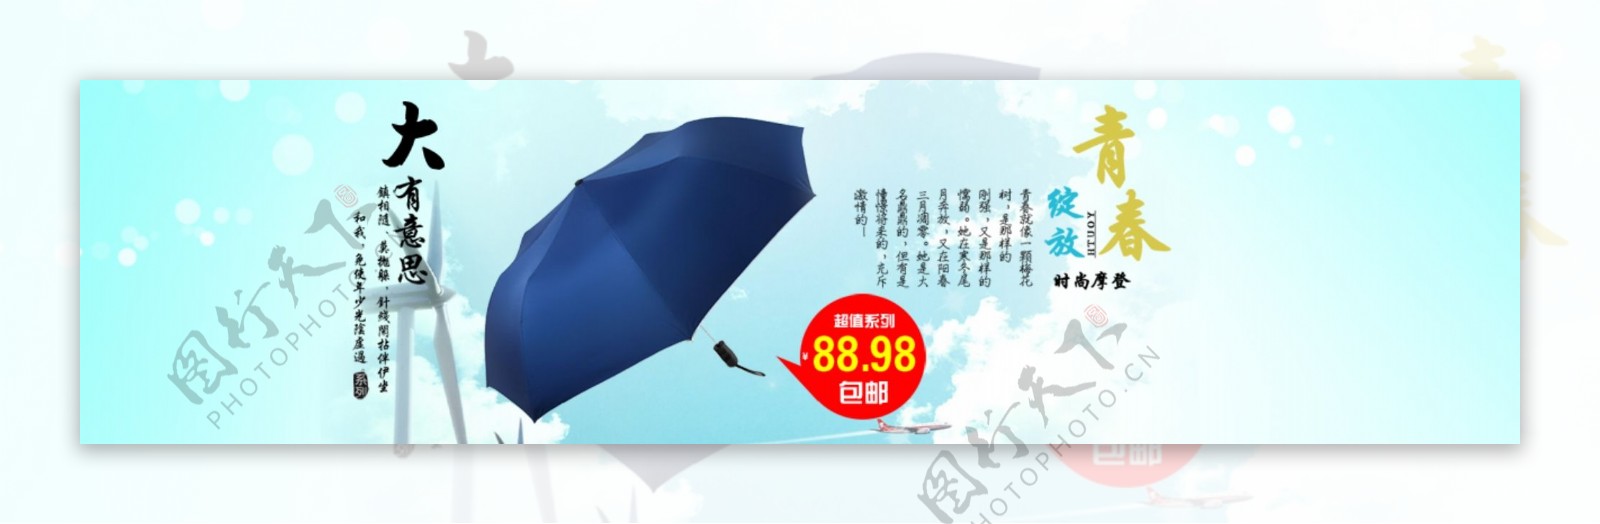 时尚阳伞女装促销活动海报